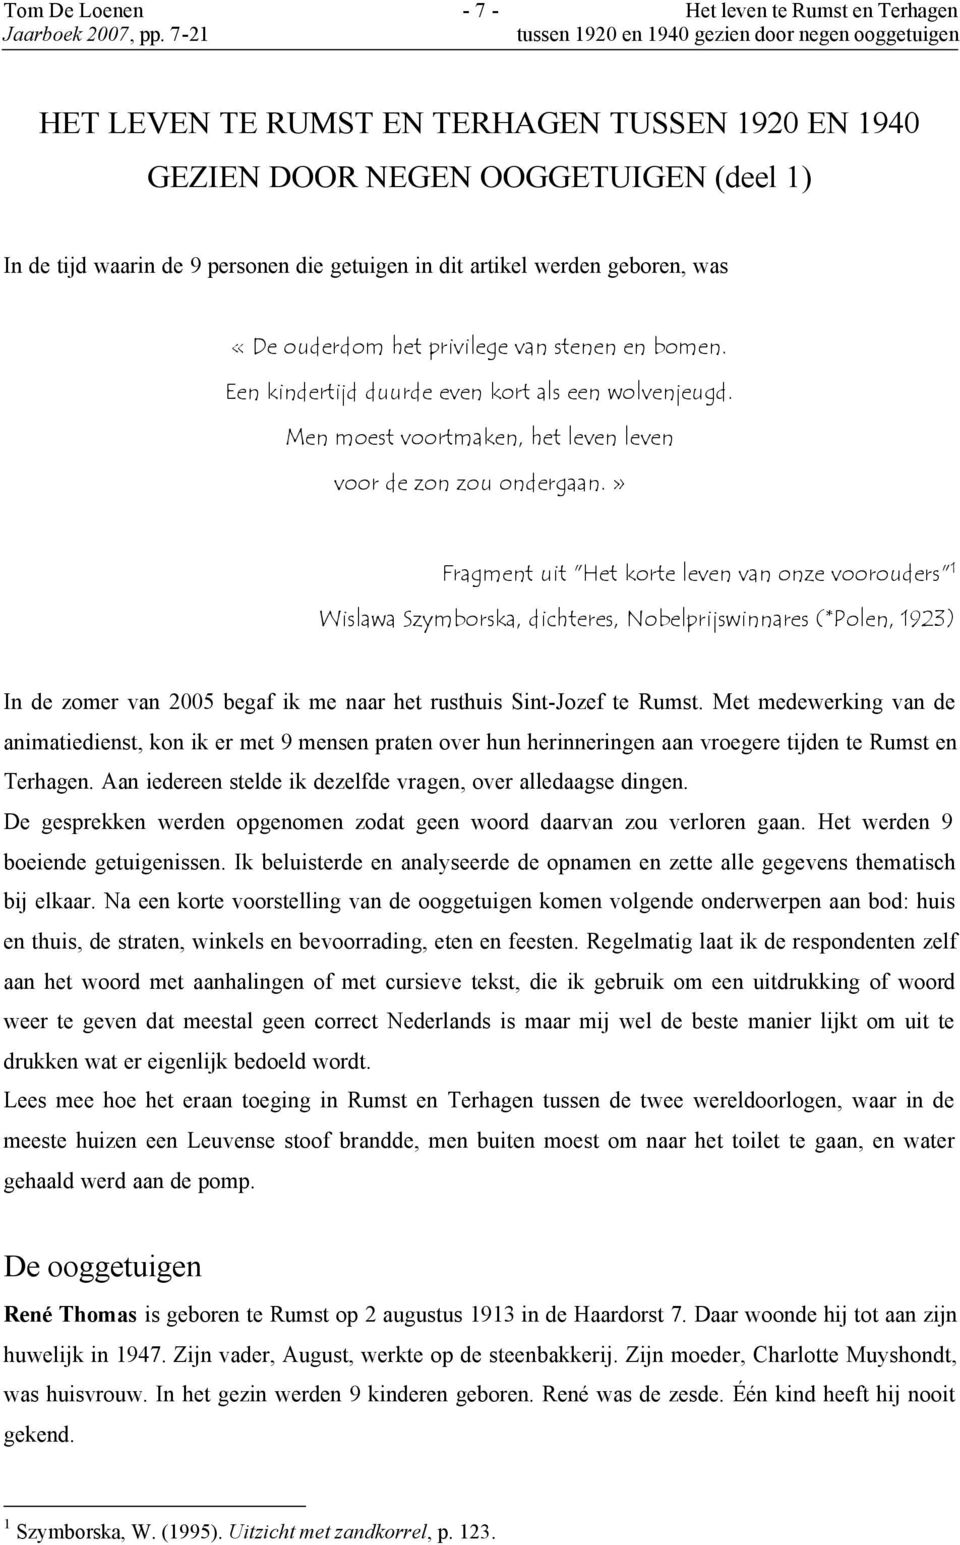 » Fragment uit "Het korte leven van onze voorouders" 1 Wislawa Szymborska, dichteres, Nobelprijswinnares (*Polen, 1923) In de zomer van 2005 begaf ik me naar het rusthuis Sint-Jozef te Rumst.